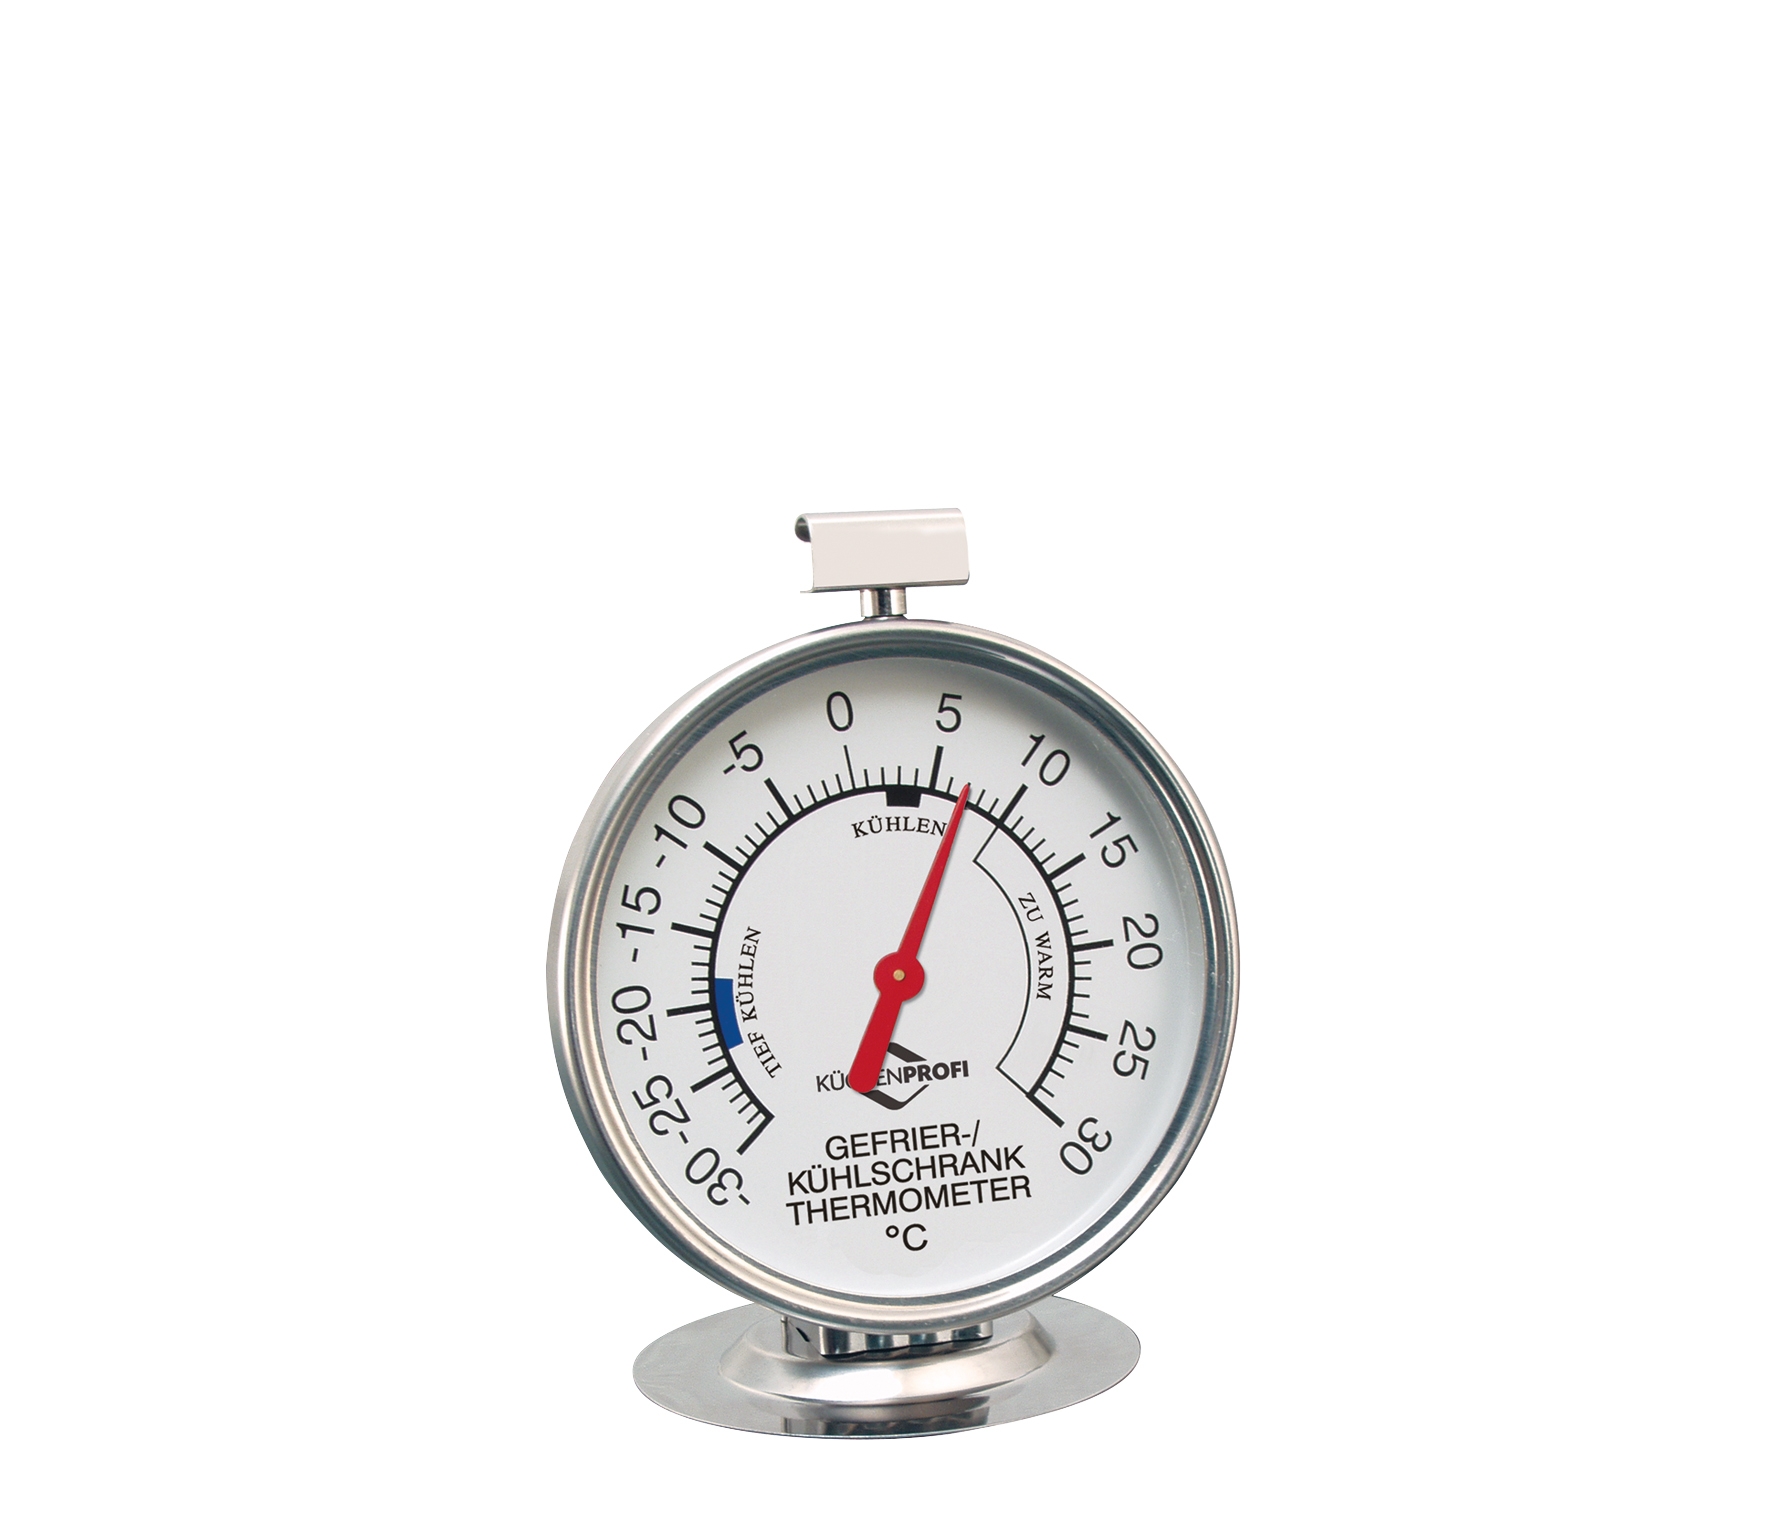 Kühlschrank-Thermometer Ø: 7,5 cm  von - 30° bis + 30°C + auch zum Hängen geeignet   für sicheres Aufbewahren